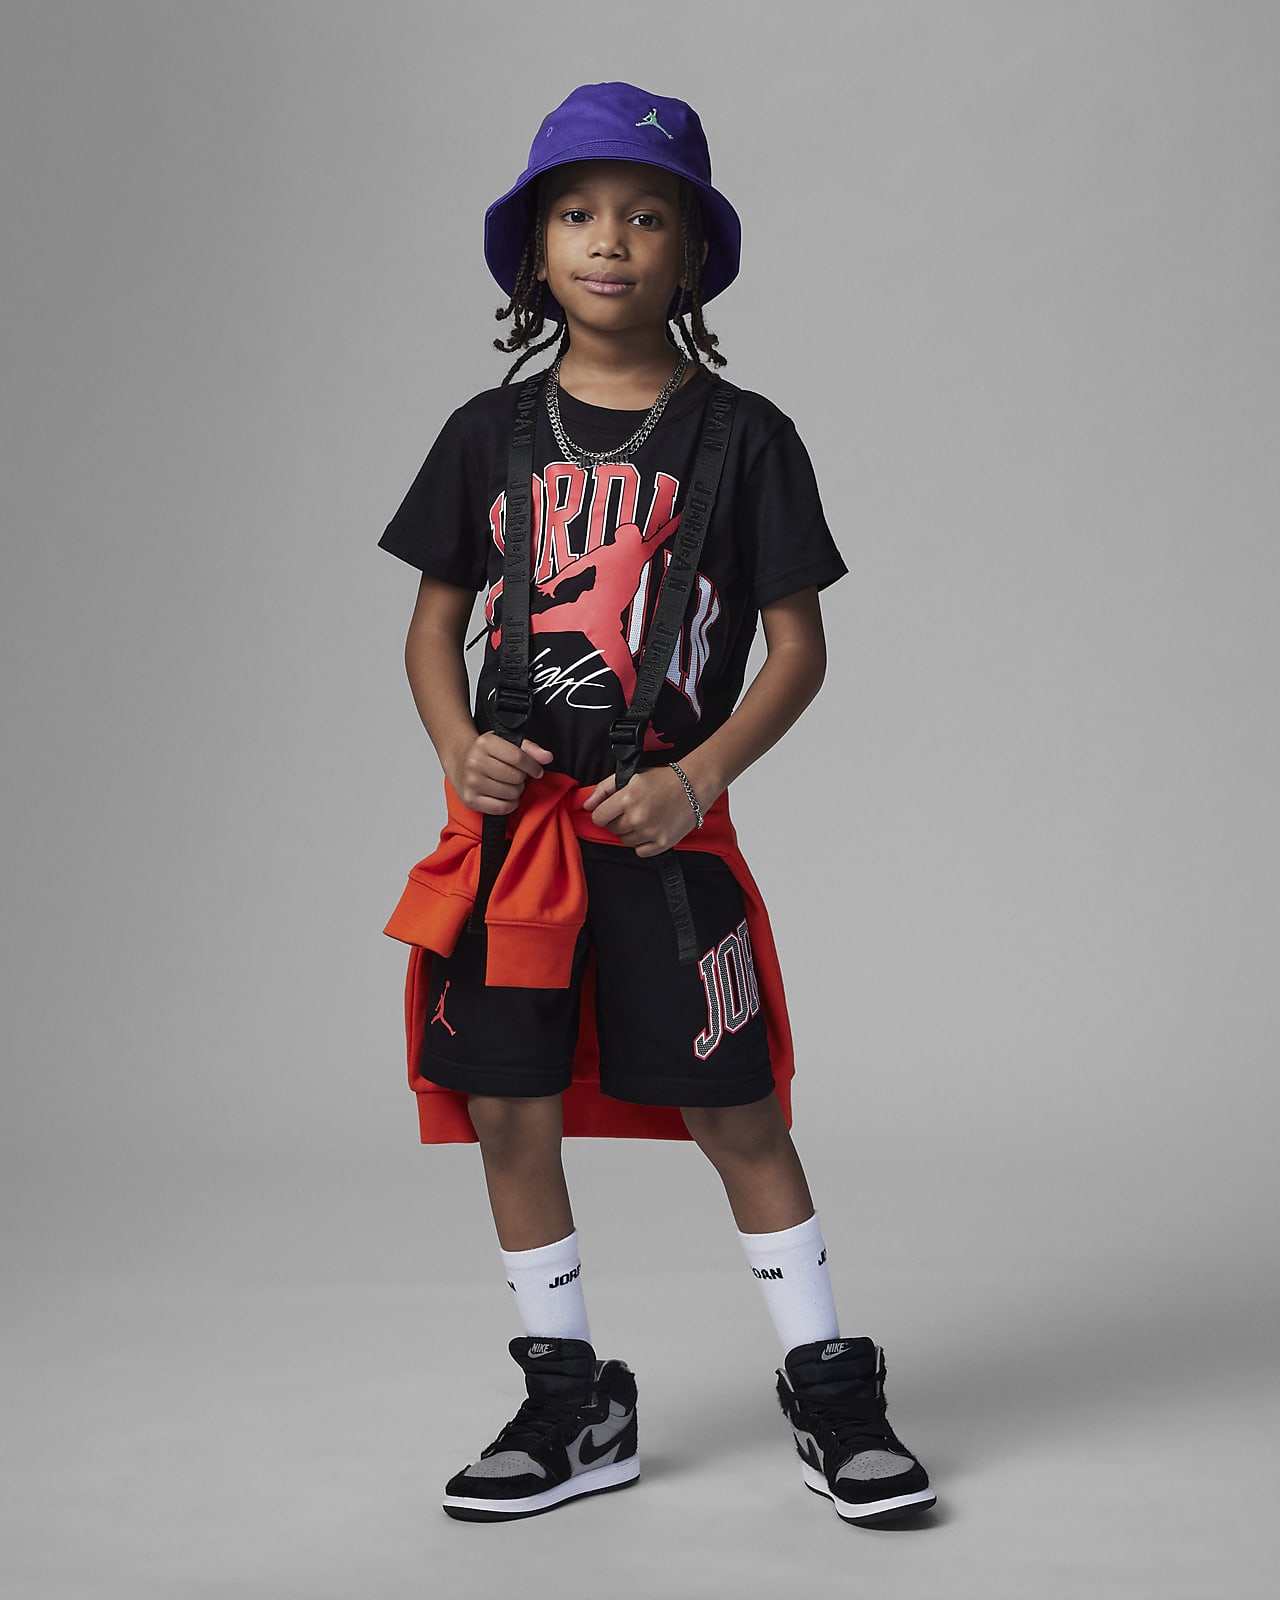 amanecer Anfibio fama Jordan Home and Away Shorts Set Conjunto de dos piezas - Niño/a pequeño/a.  Nike ES